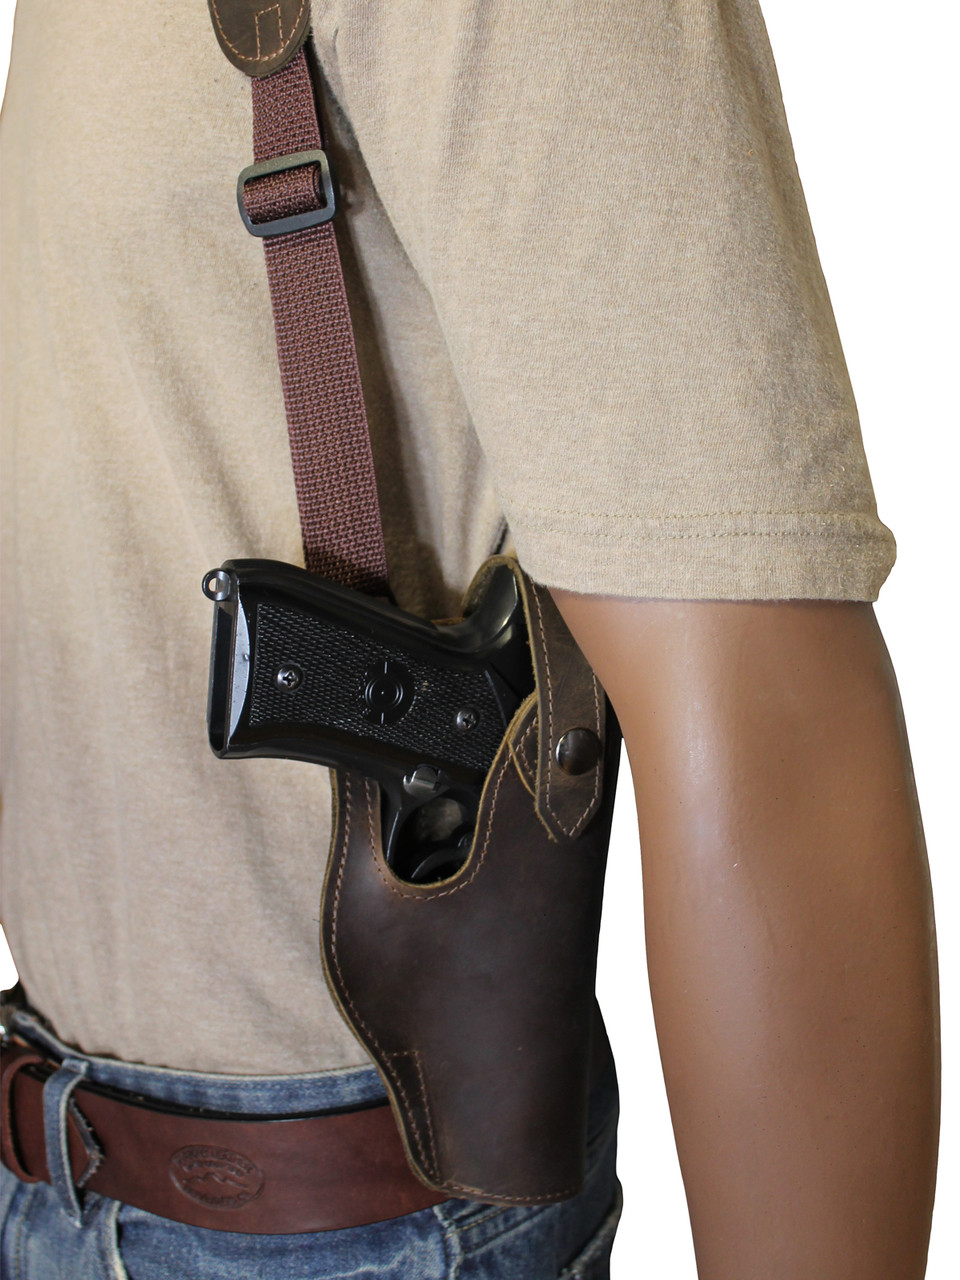 concealment shoulder holster